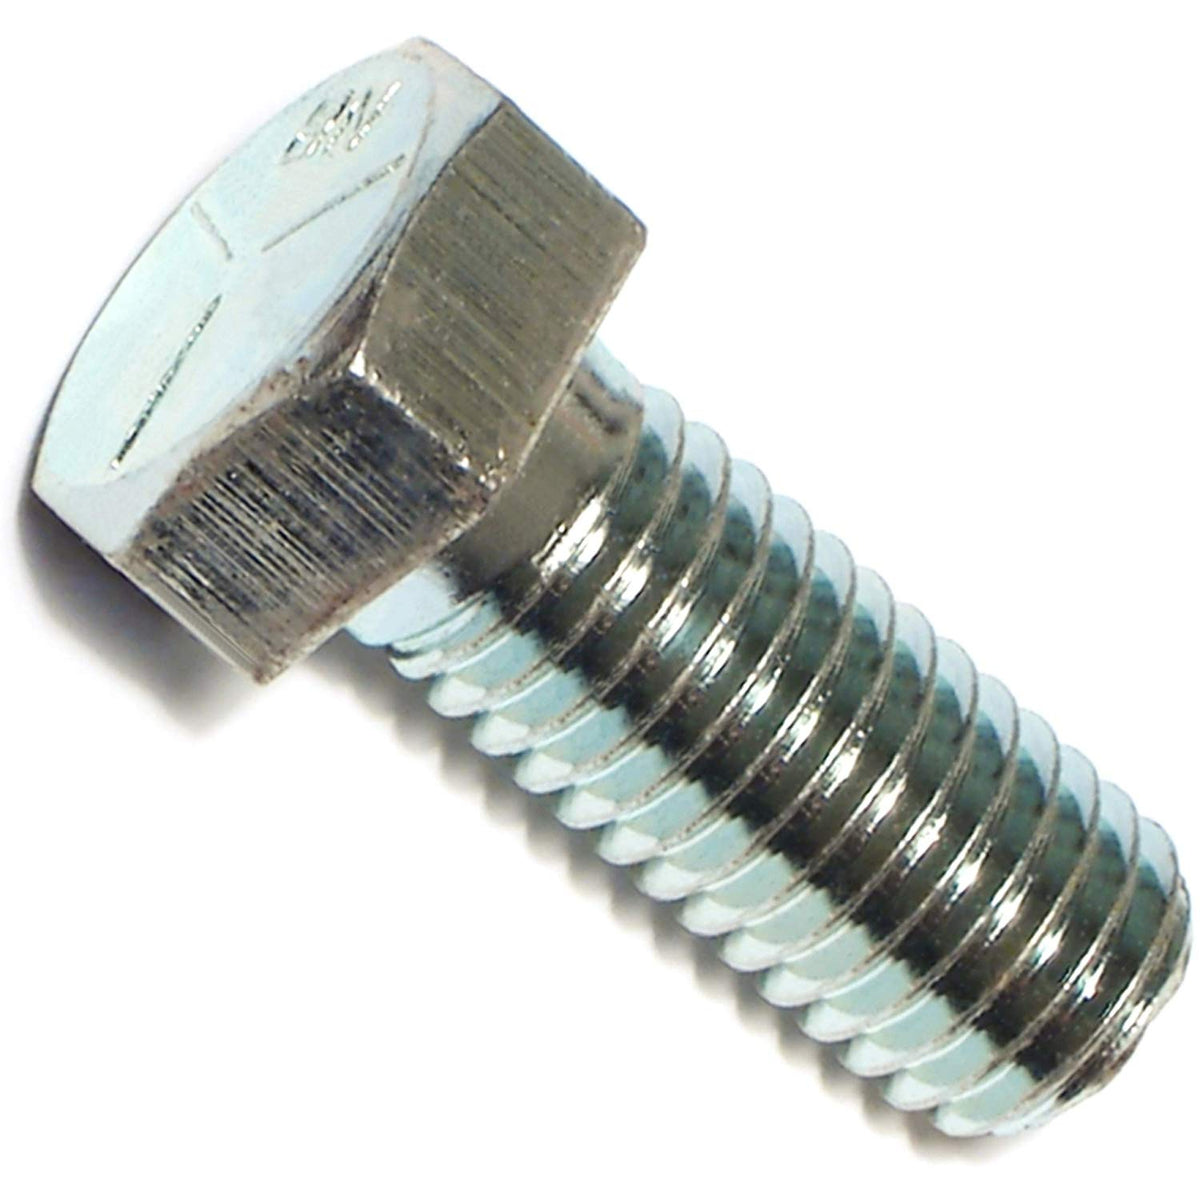 Midwest Fastener 53386 Steel Coarse Thread Screws, 5/8-11 x 1-1/2"